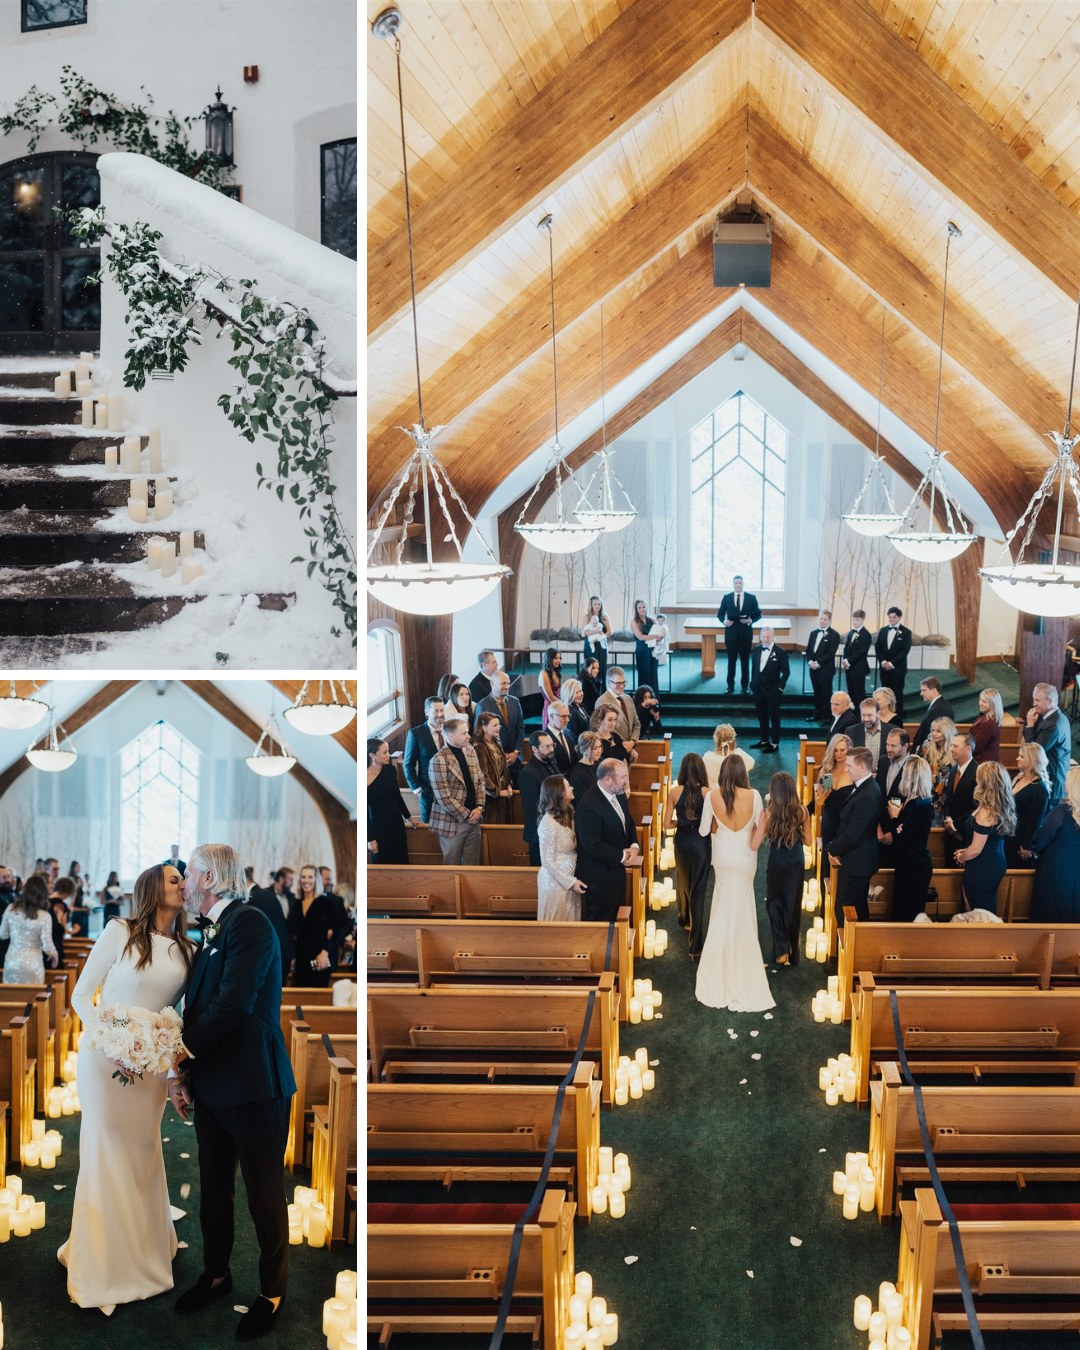 a wedding ceremony in a church